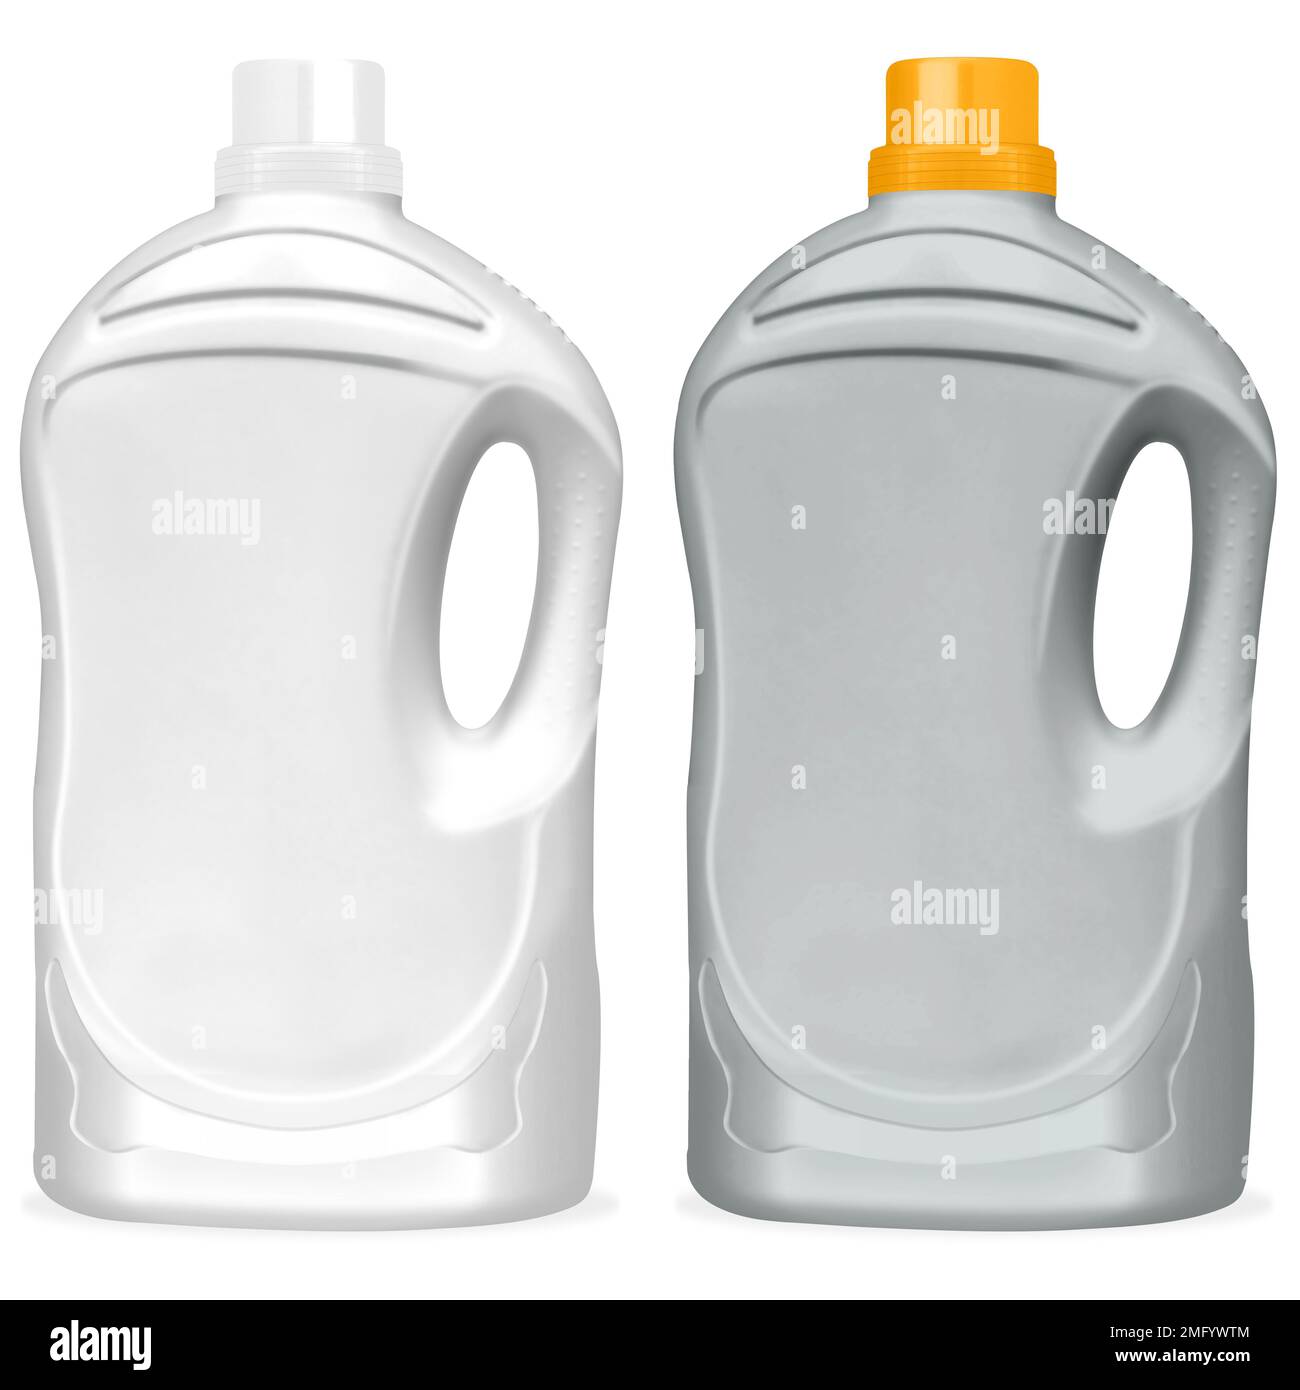 ilustración de botellas para limpiadores o detergentes de ropa aislados sobre fondo blanco, tapón de colores Stock Photo